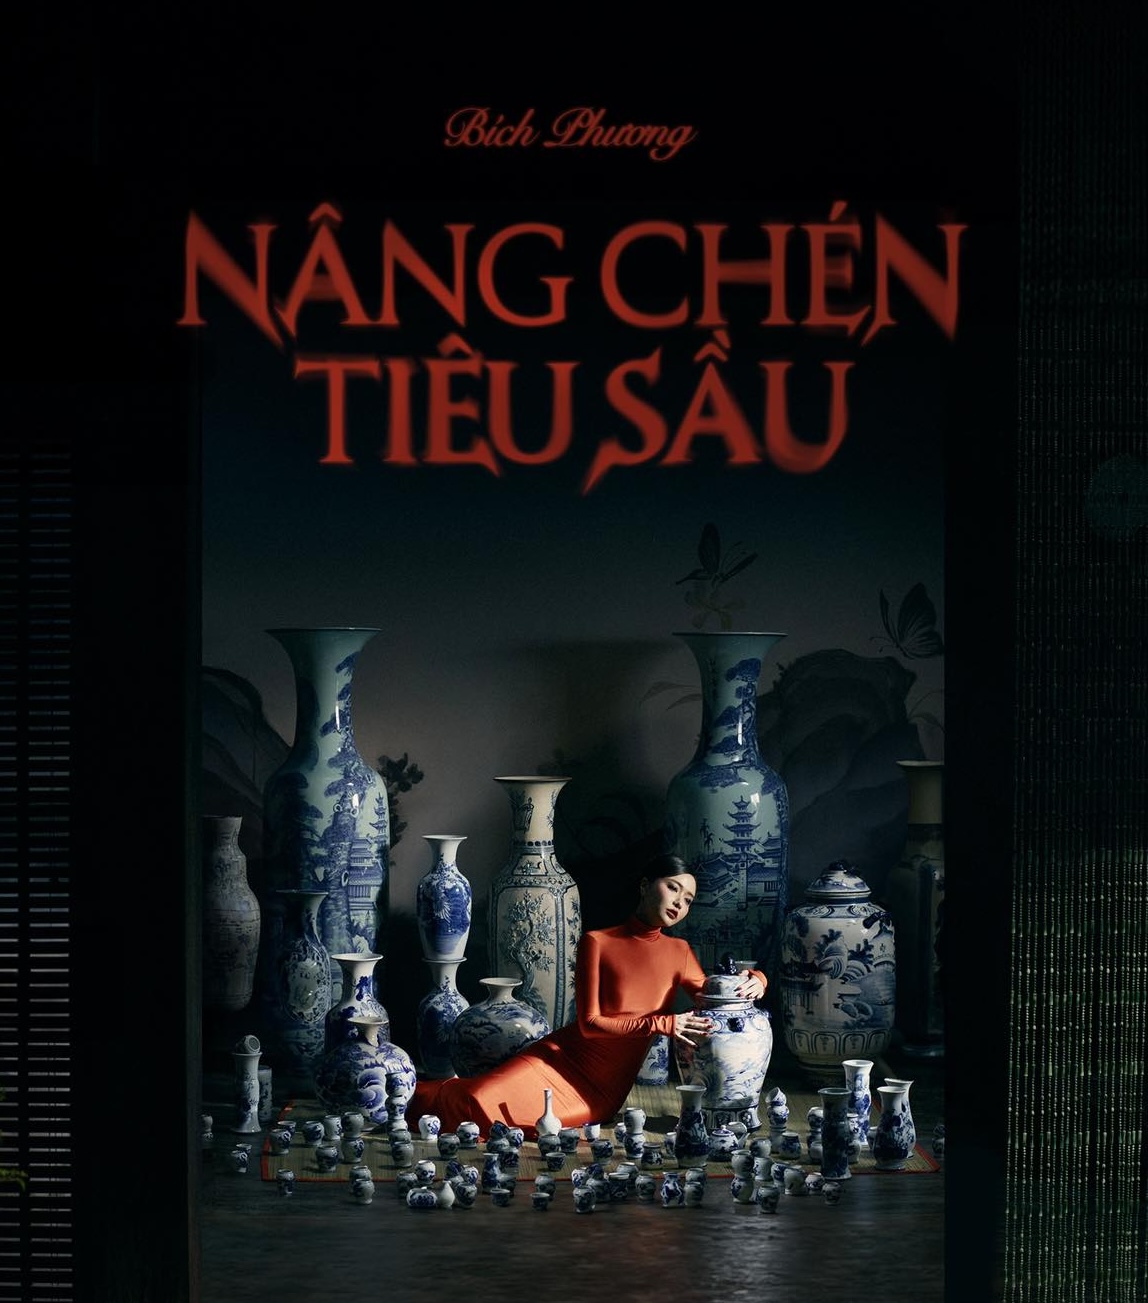 Bich Phuong Nâng Chén Tiêu Sầu cover artwork